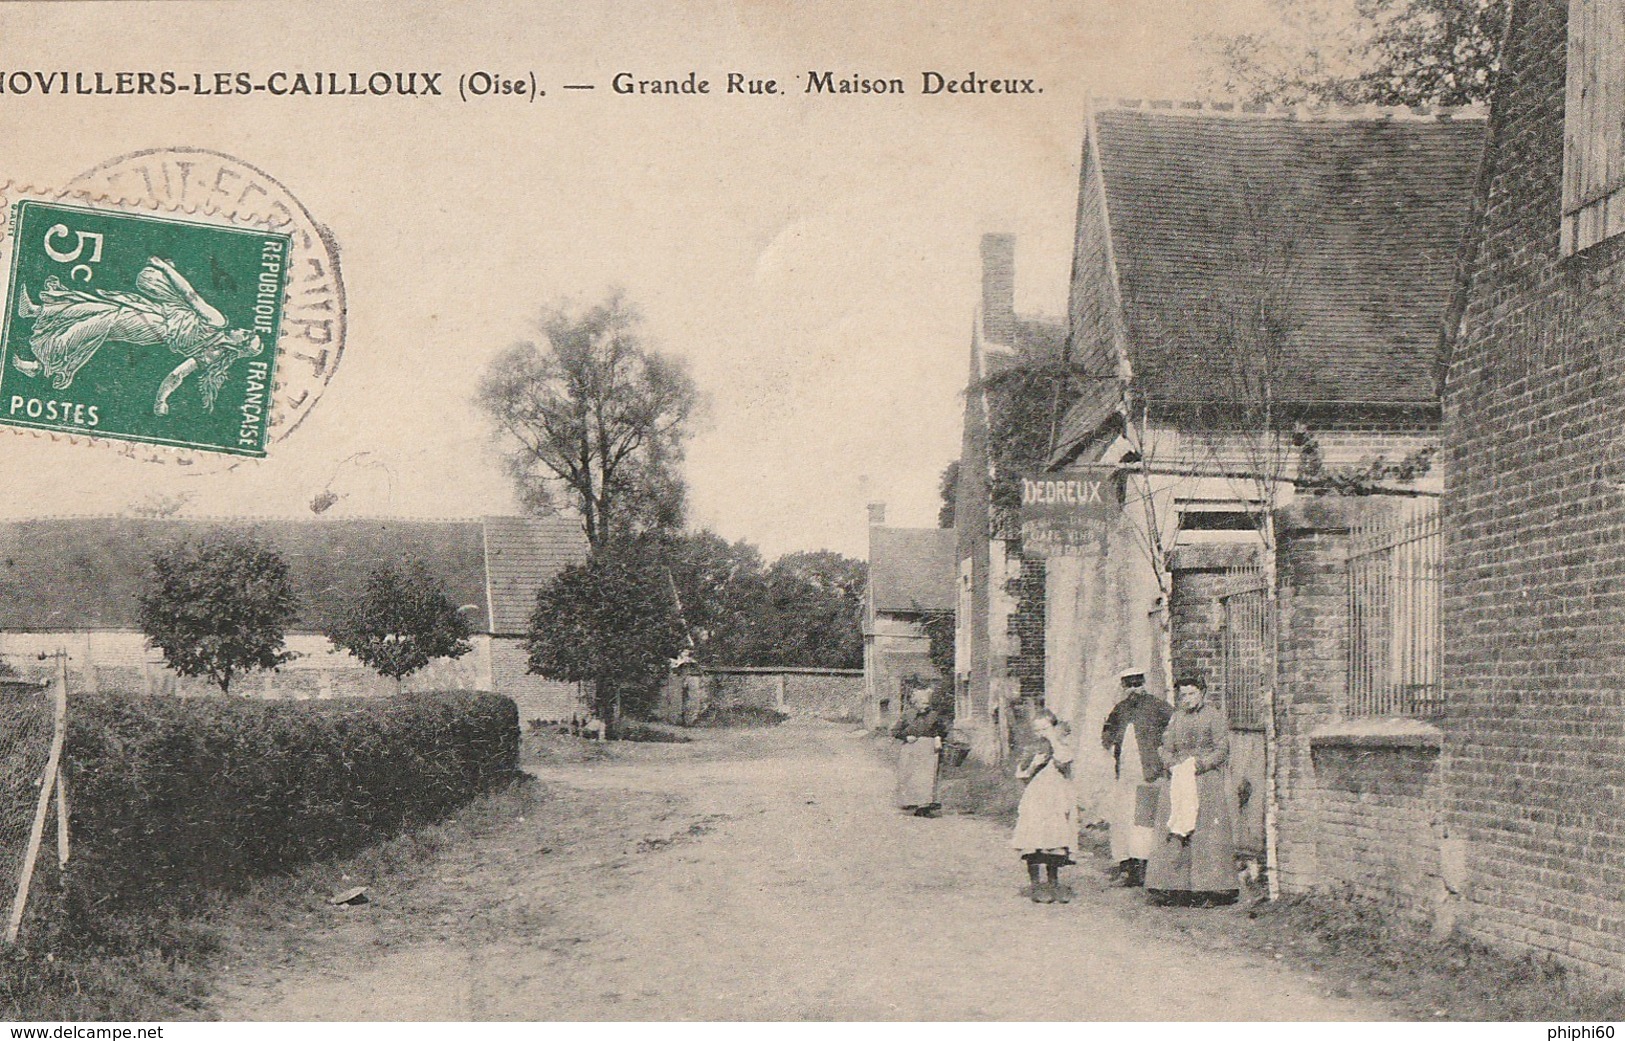 NOVILLERS-LES-CAILLOUX  -  60  -  Grande Rue  - Maison DEDREUX - Café - Vins - Eaux De Vie - Liqueurs - Cafés